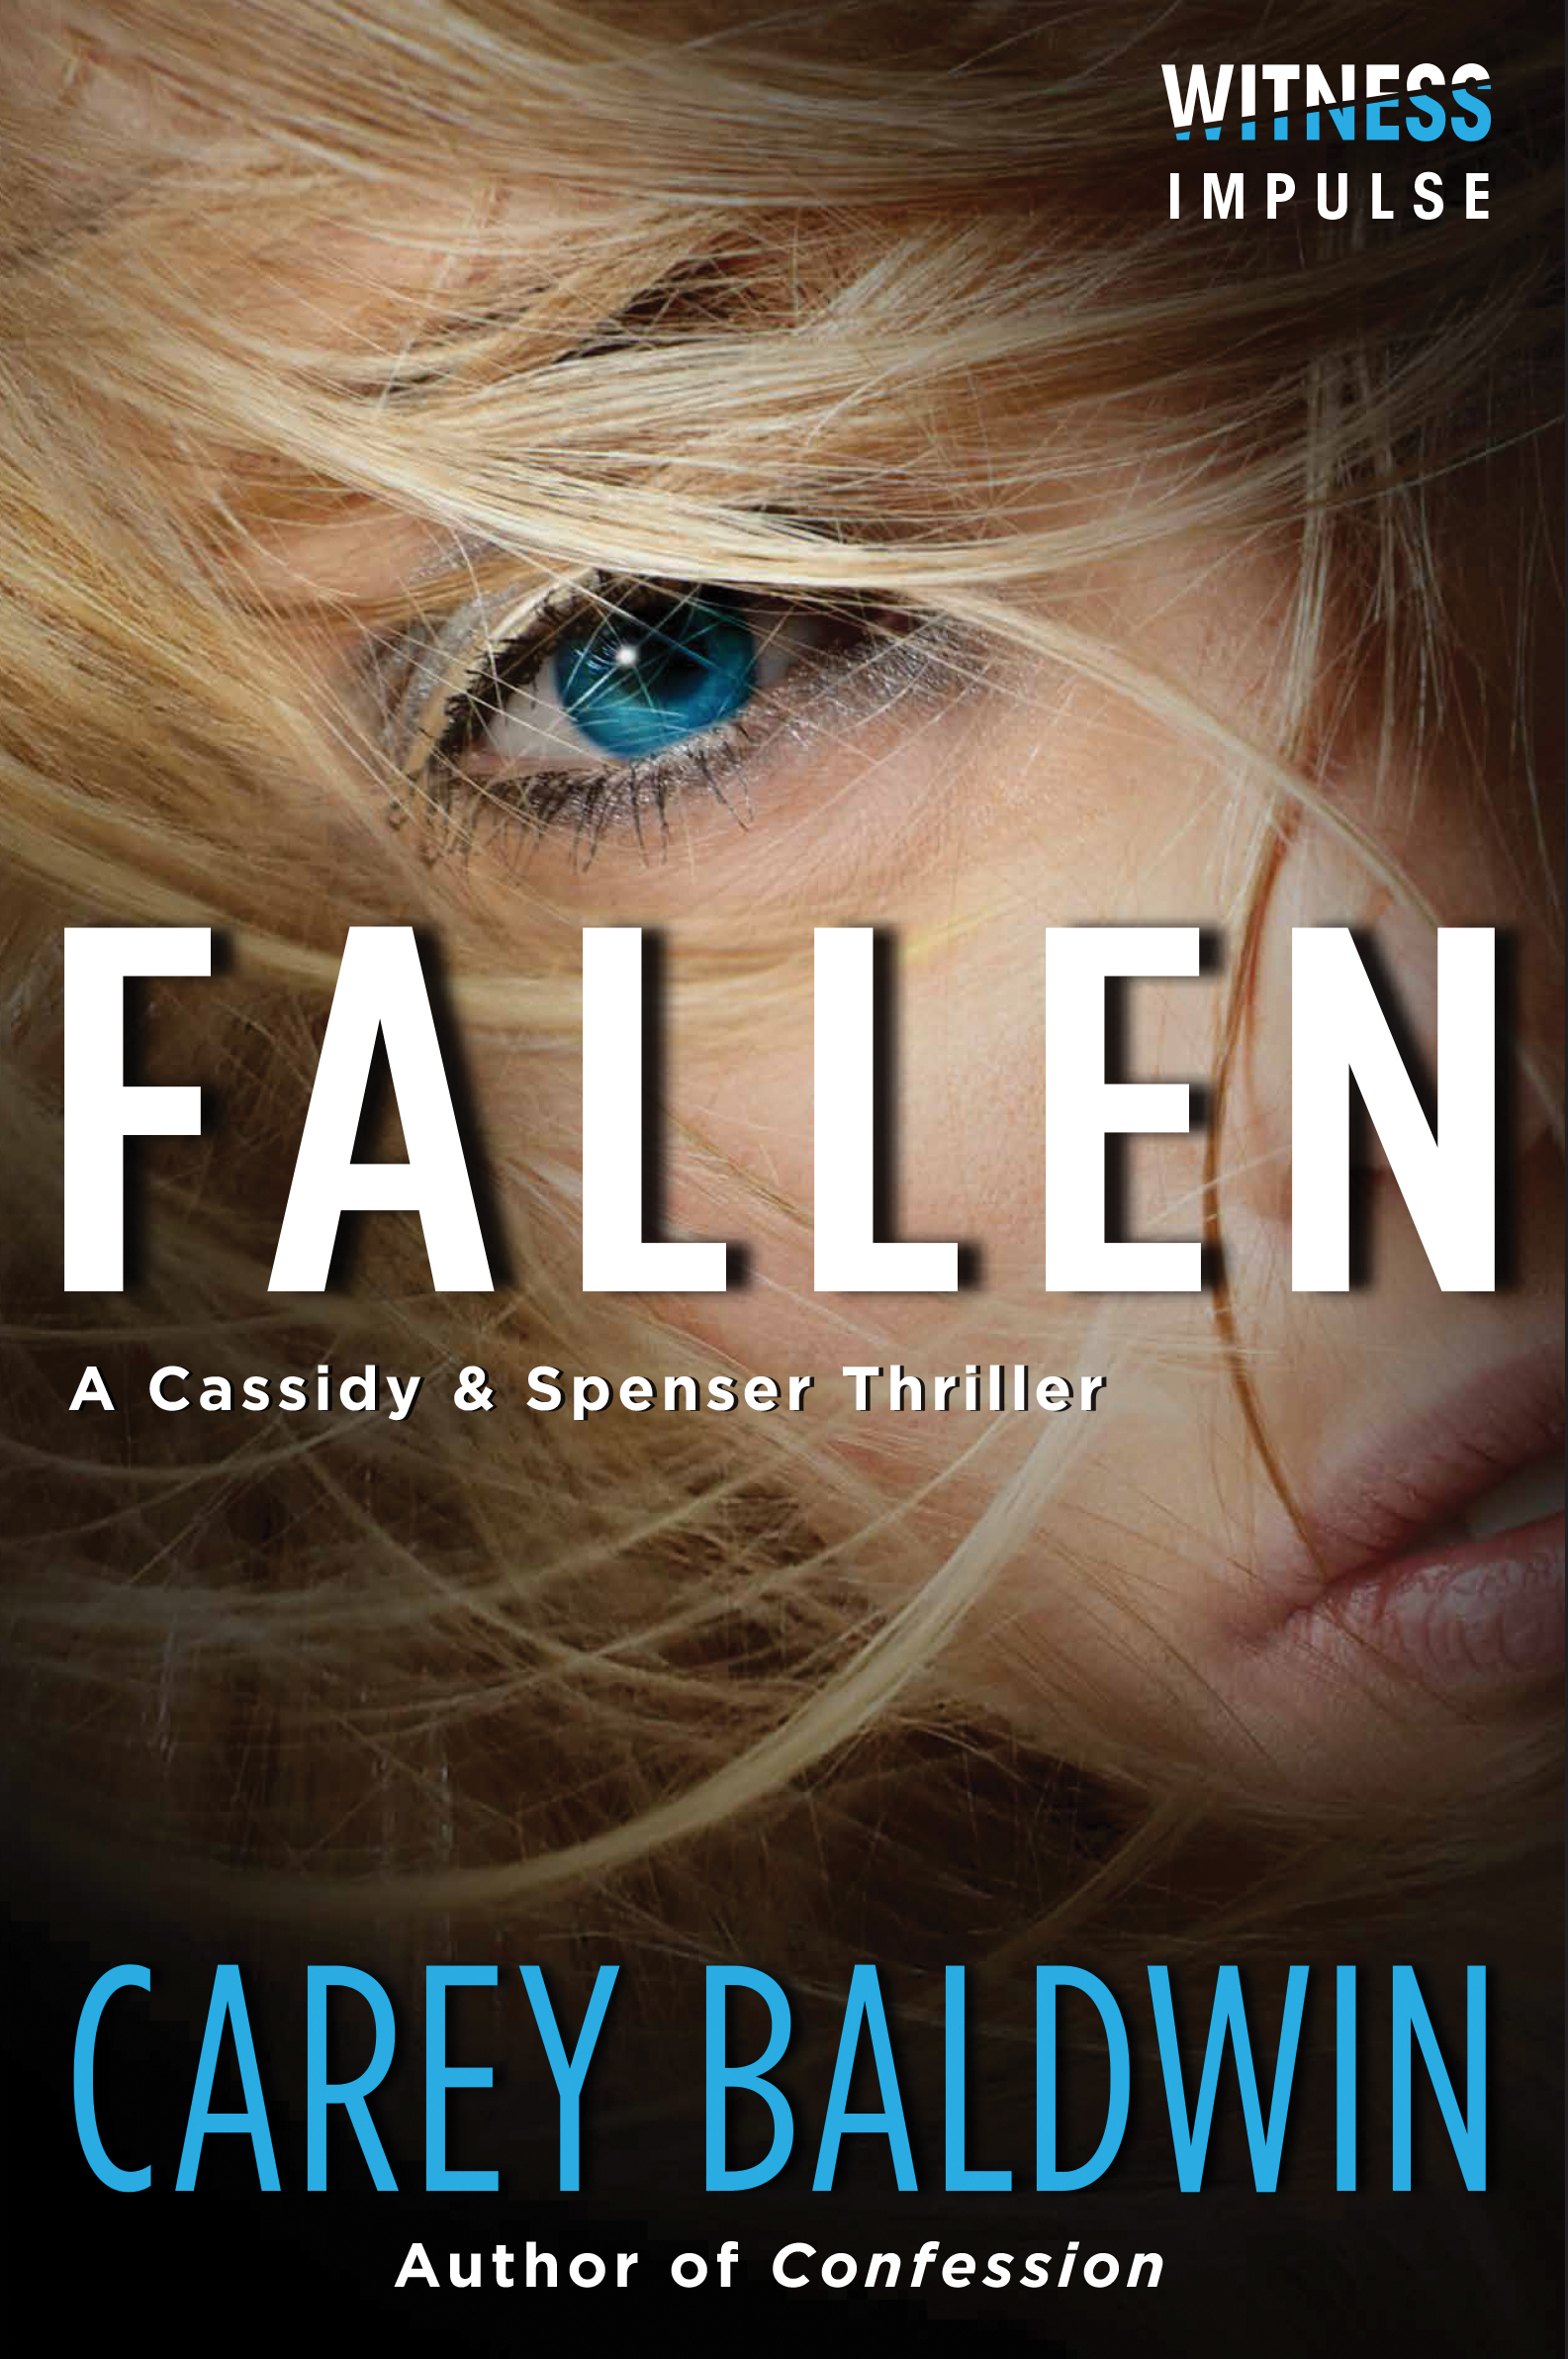 Why We’ve “Fallen” for Carey Baldwin